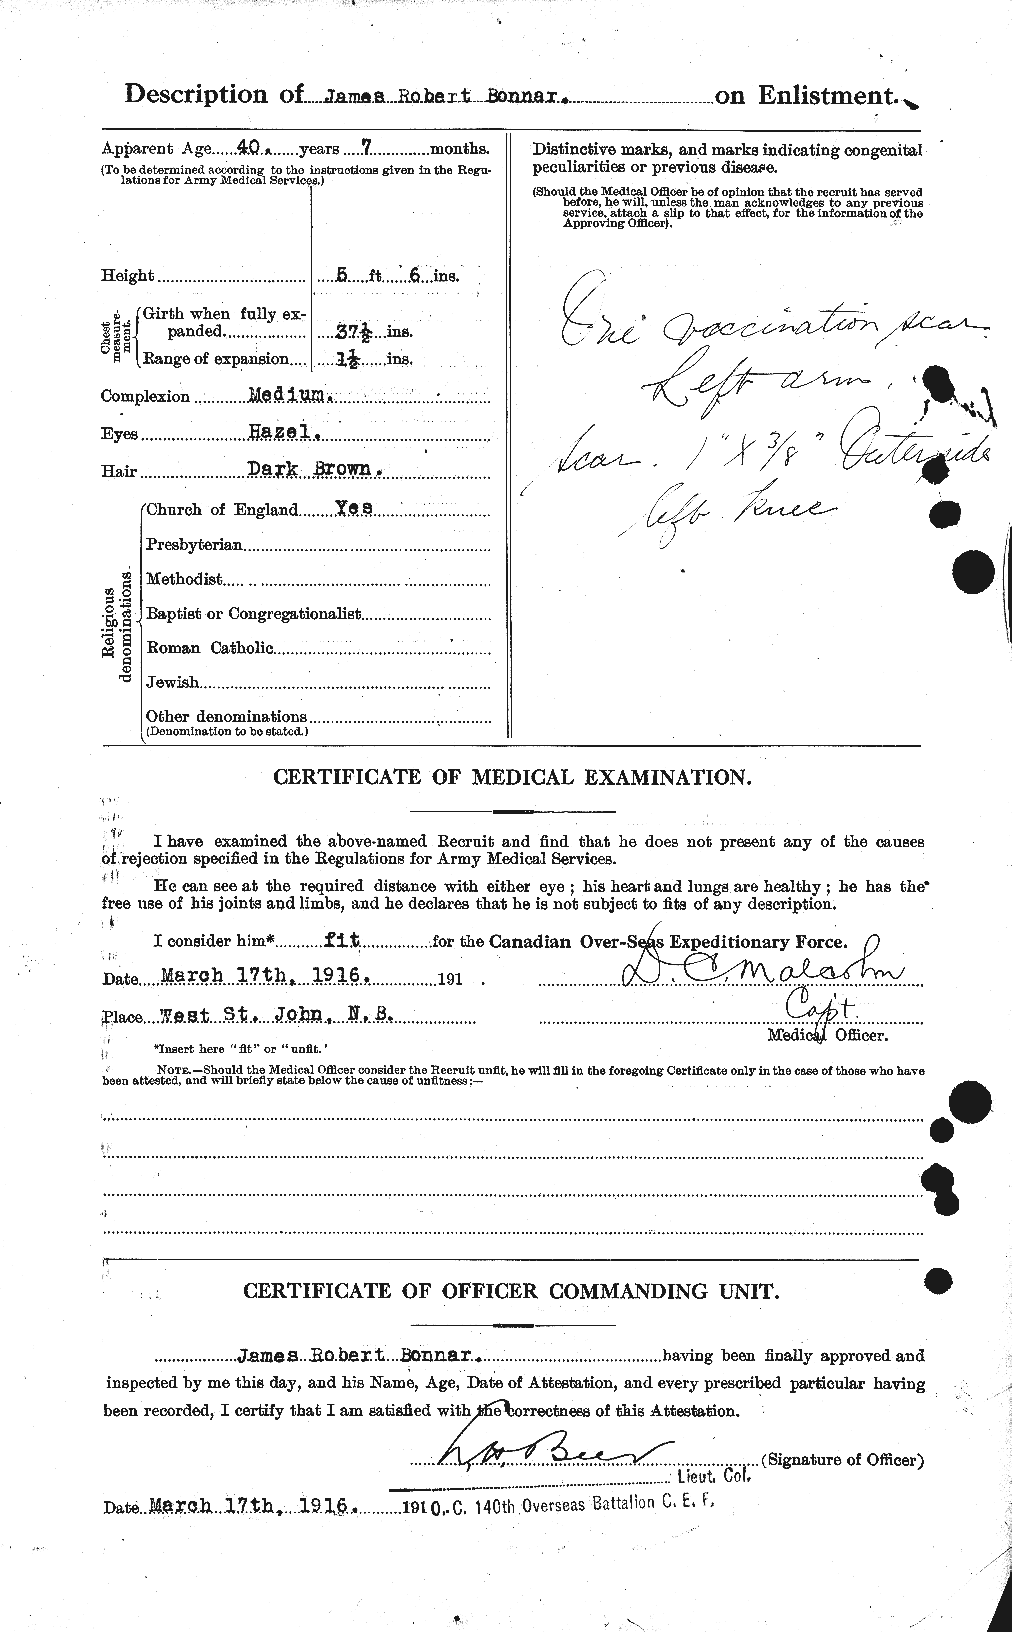 Dossiers du Personnel de la Première Guerre mondiale - CEC 250705b